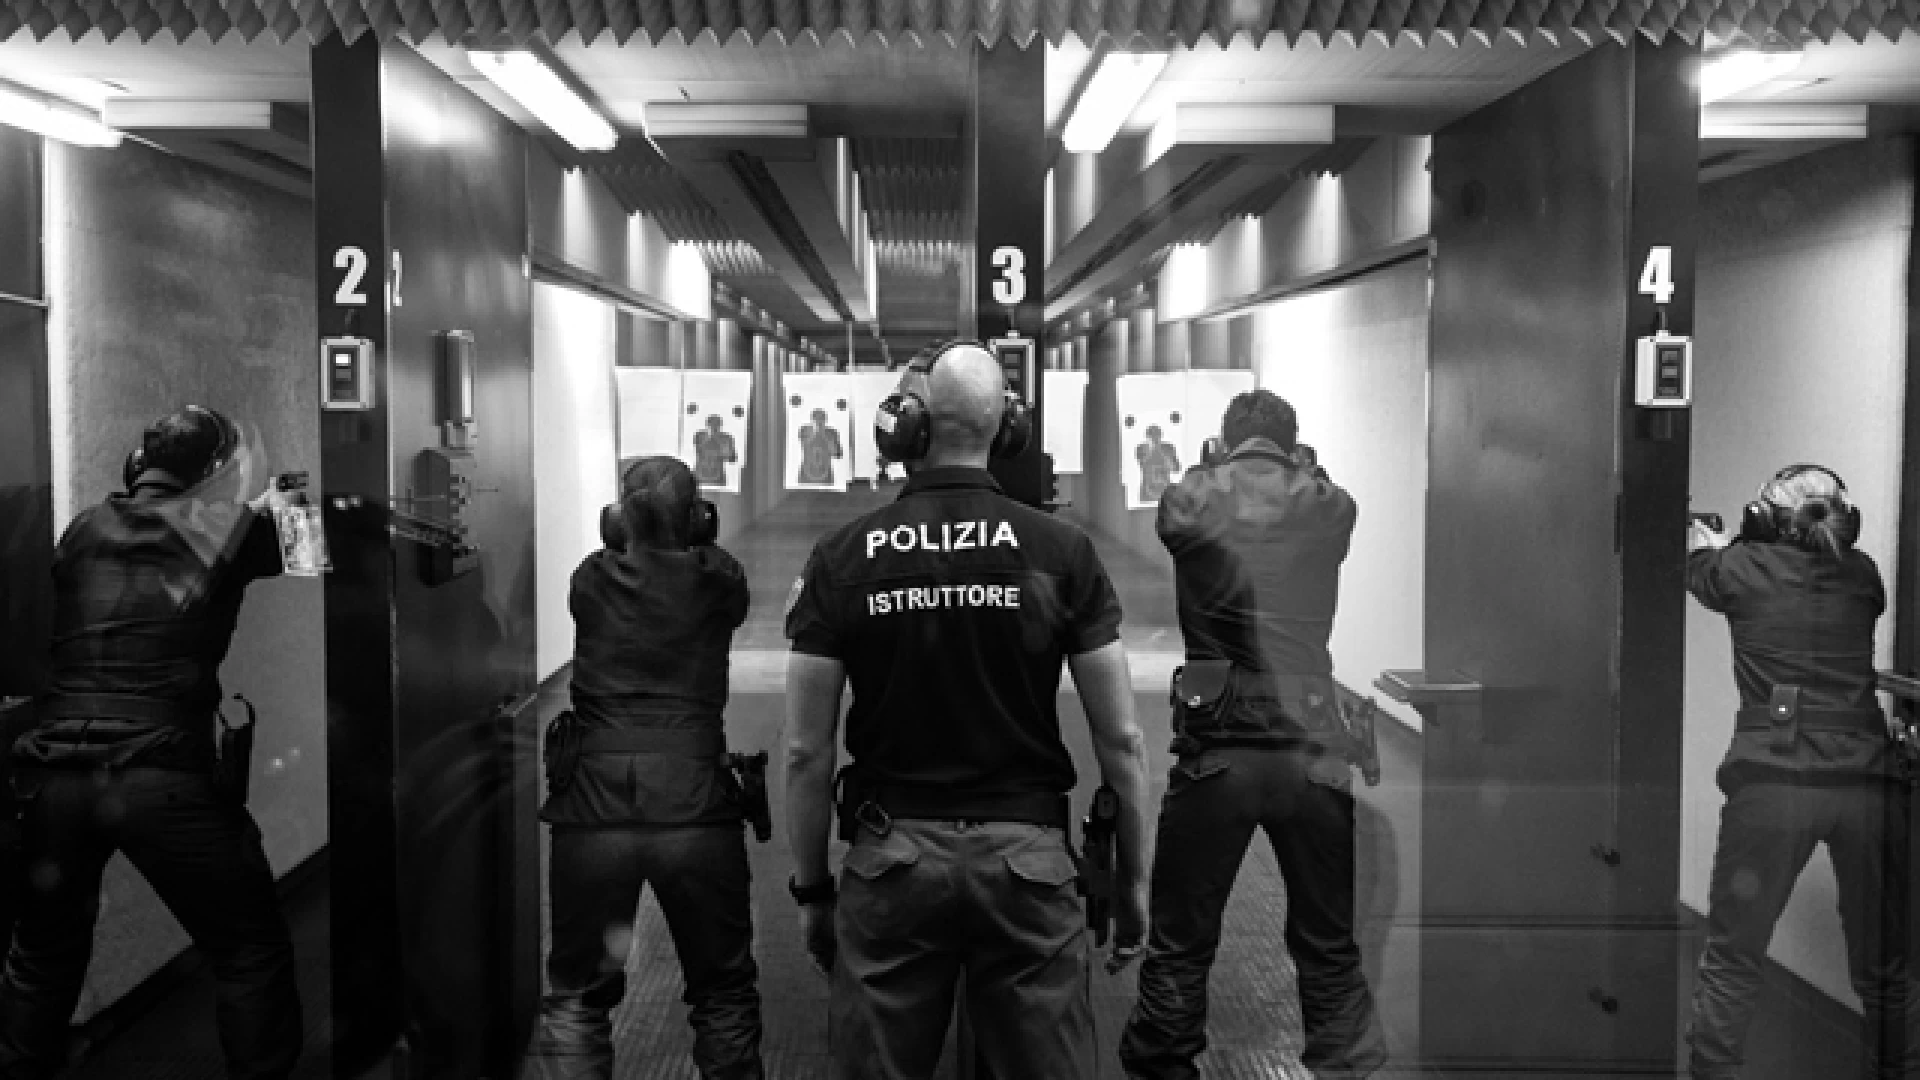 Calendario Polizia di Stato 2020: presentata a Roma l’edizione annuale. Si potrà acquistare anche on-line.